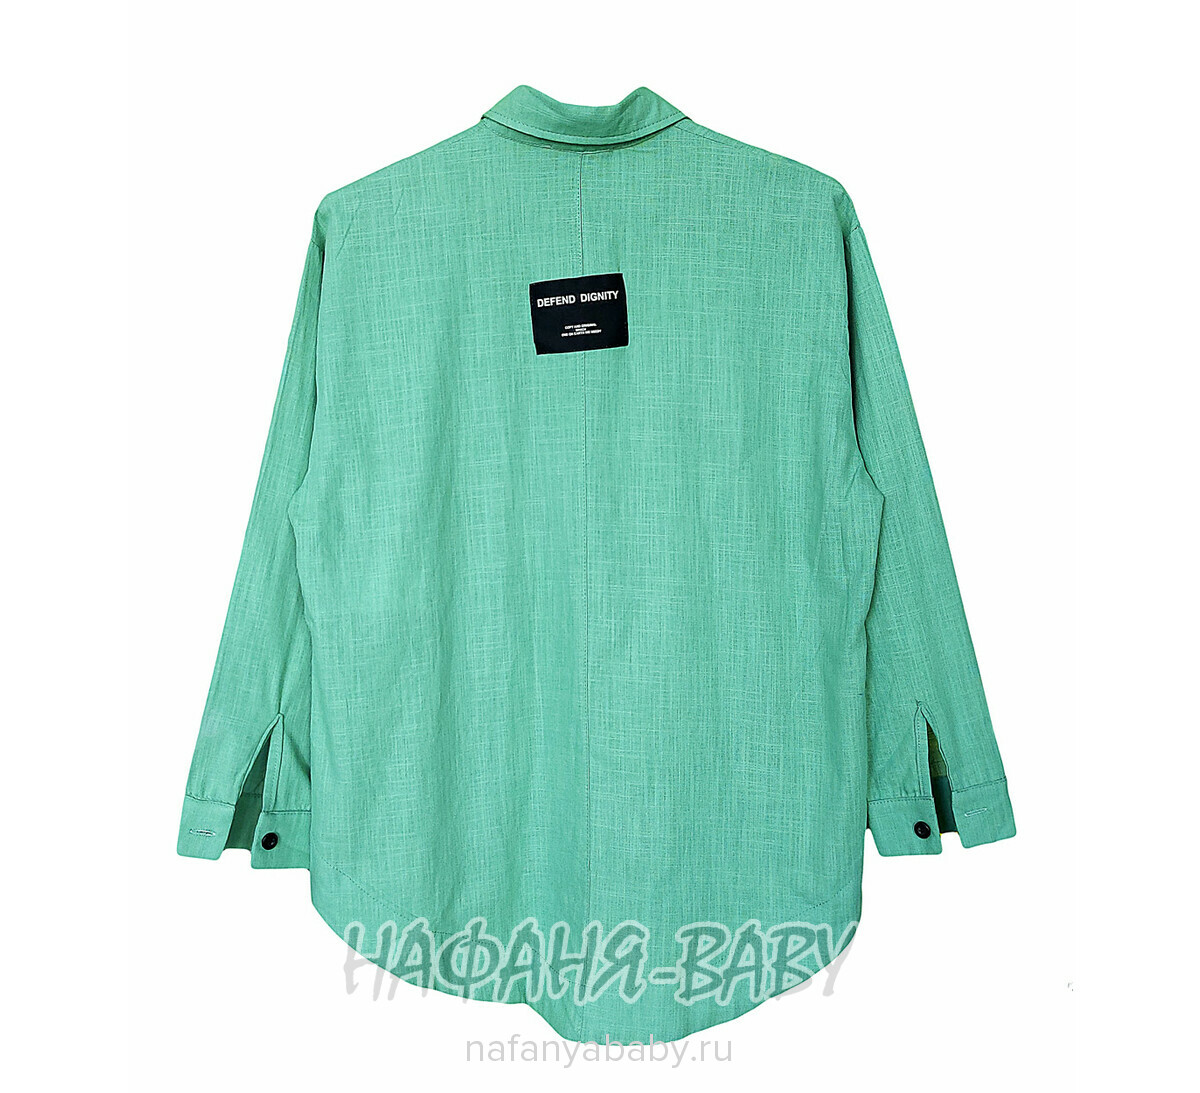 Модная летняя рубашка TK арт: 1968, 5-9 лет, 10-15 лет, цвет дымчато-зеленый хаки, оптом Турция